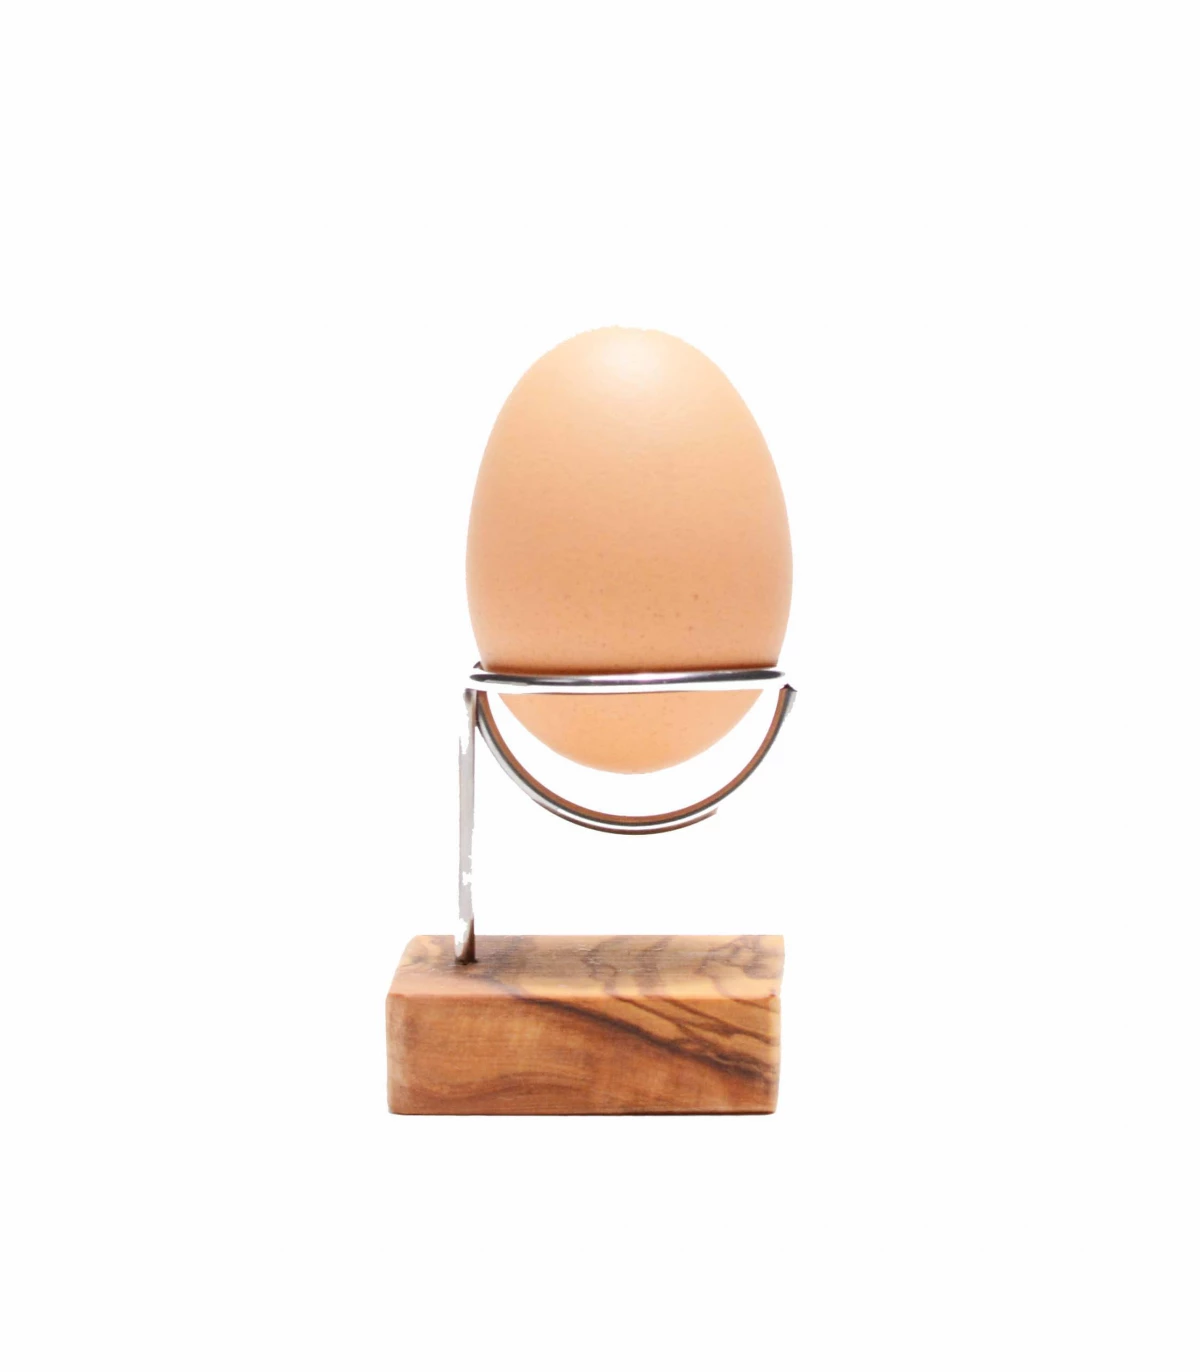 4x Stainless Steel Boiled Egg Cups Stand Rack Eggs Holder Egg